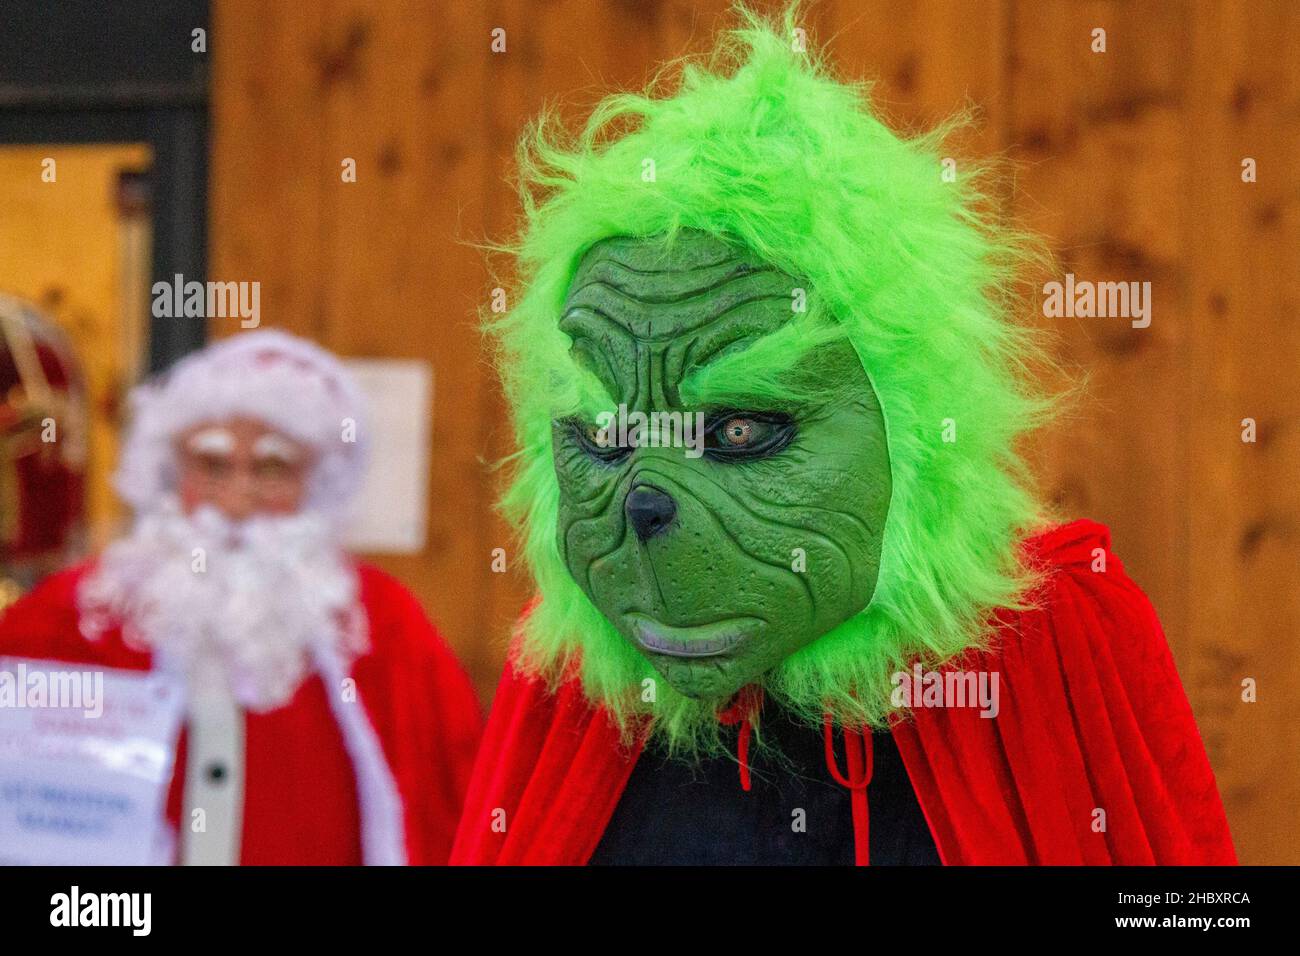 Babbo Natale & Adulto Grande Grinch Costume Natale Furry Santa Suit Vesti Vancy vestito Green con maschera in vendita a Preston, Regno Unito Foto Stock